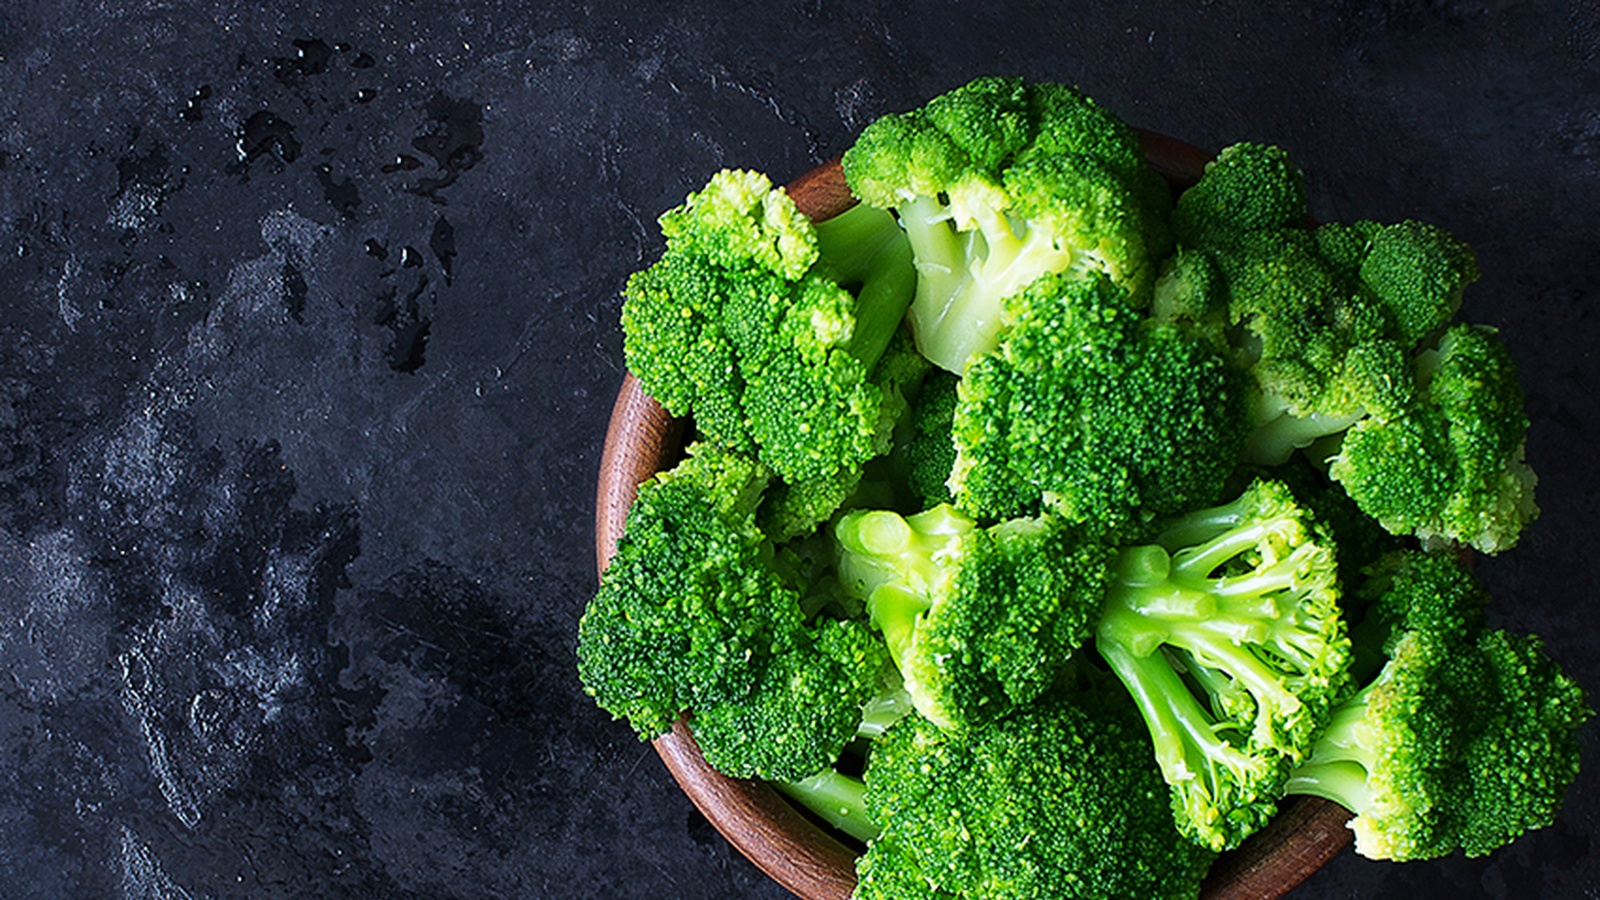 Leguma care întărește oasele și te ajută să slăbești este broccoli, care are o mulțime de proprietăți și beneficii asupra organismului